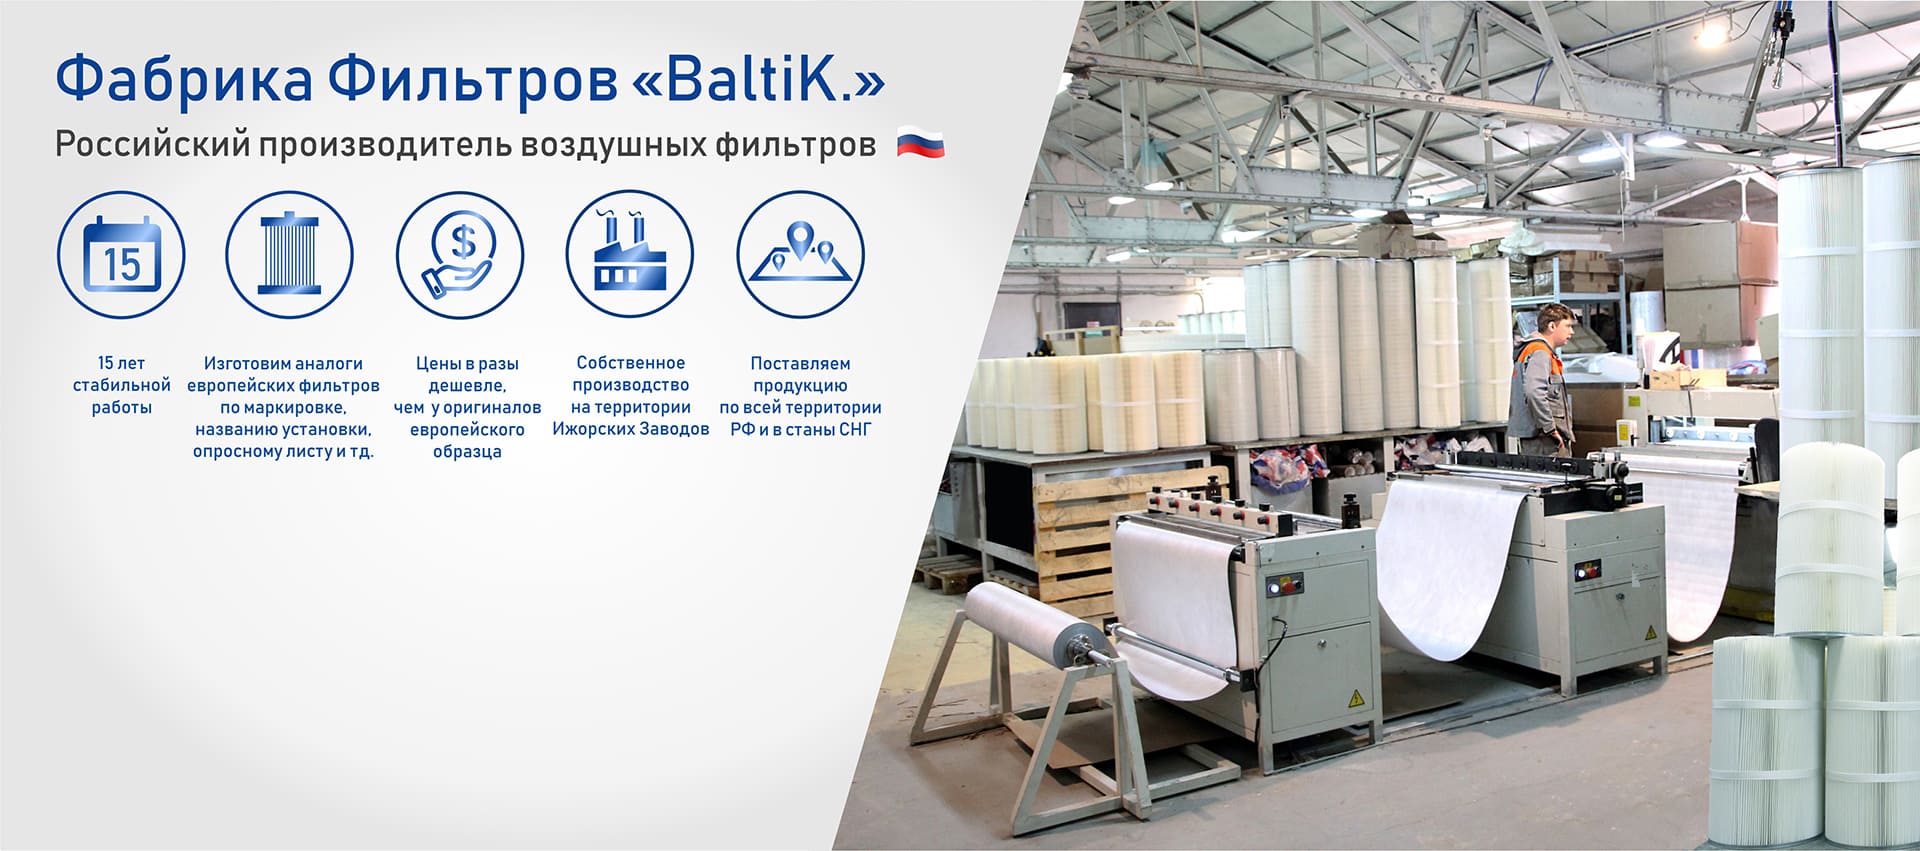 цех по производству воздущных фильтров фабрики фильтров Baltik